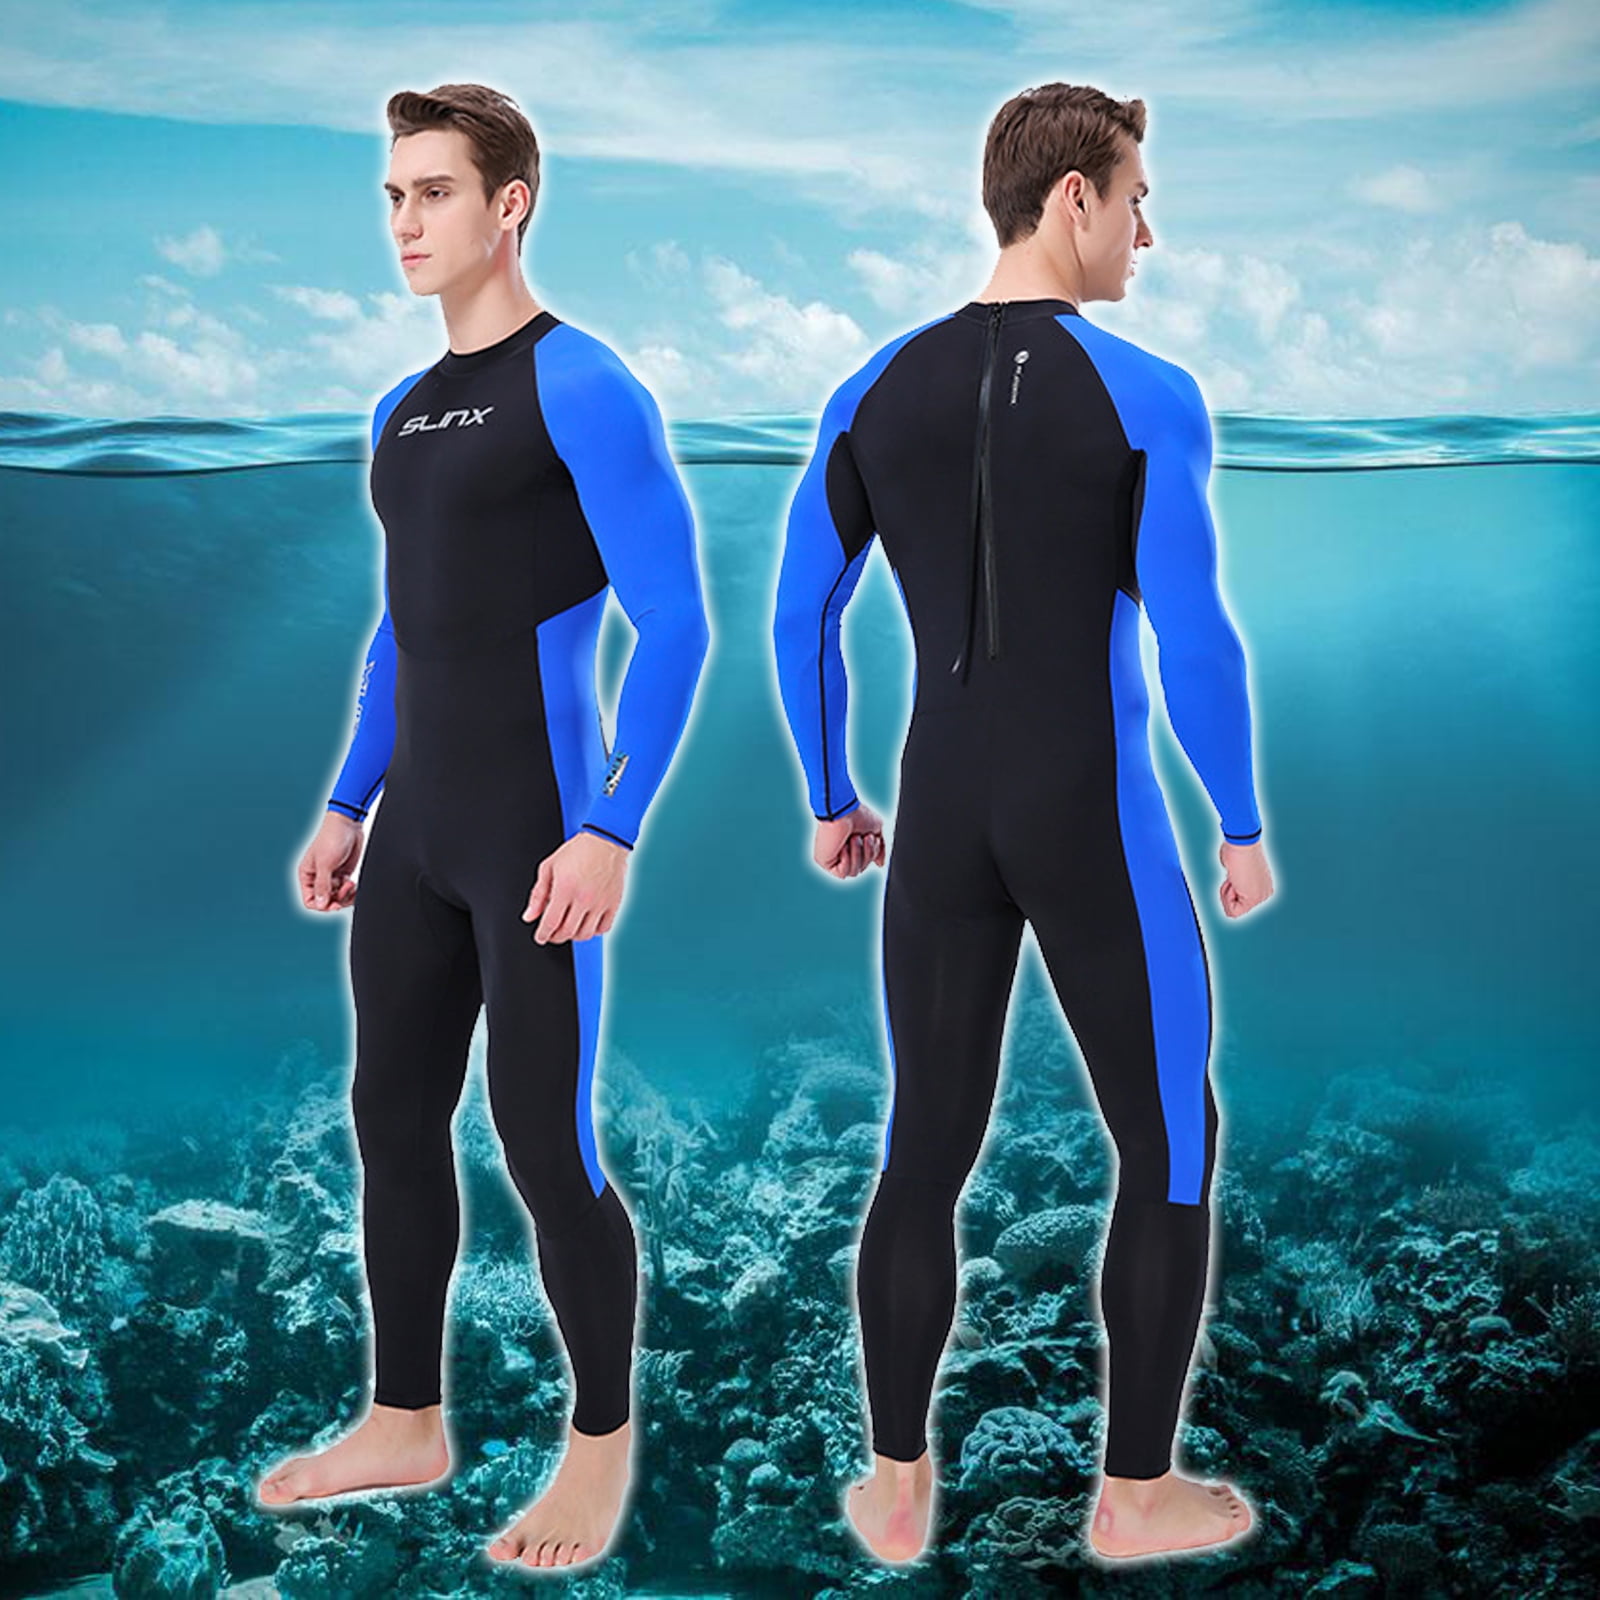 Jellyfish Repelling for Scuba Diving Surfing Fishing Kayaking Swimming 2.5 mm Neoprene Full Body Wetsuit for Kids